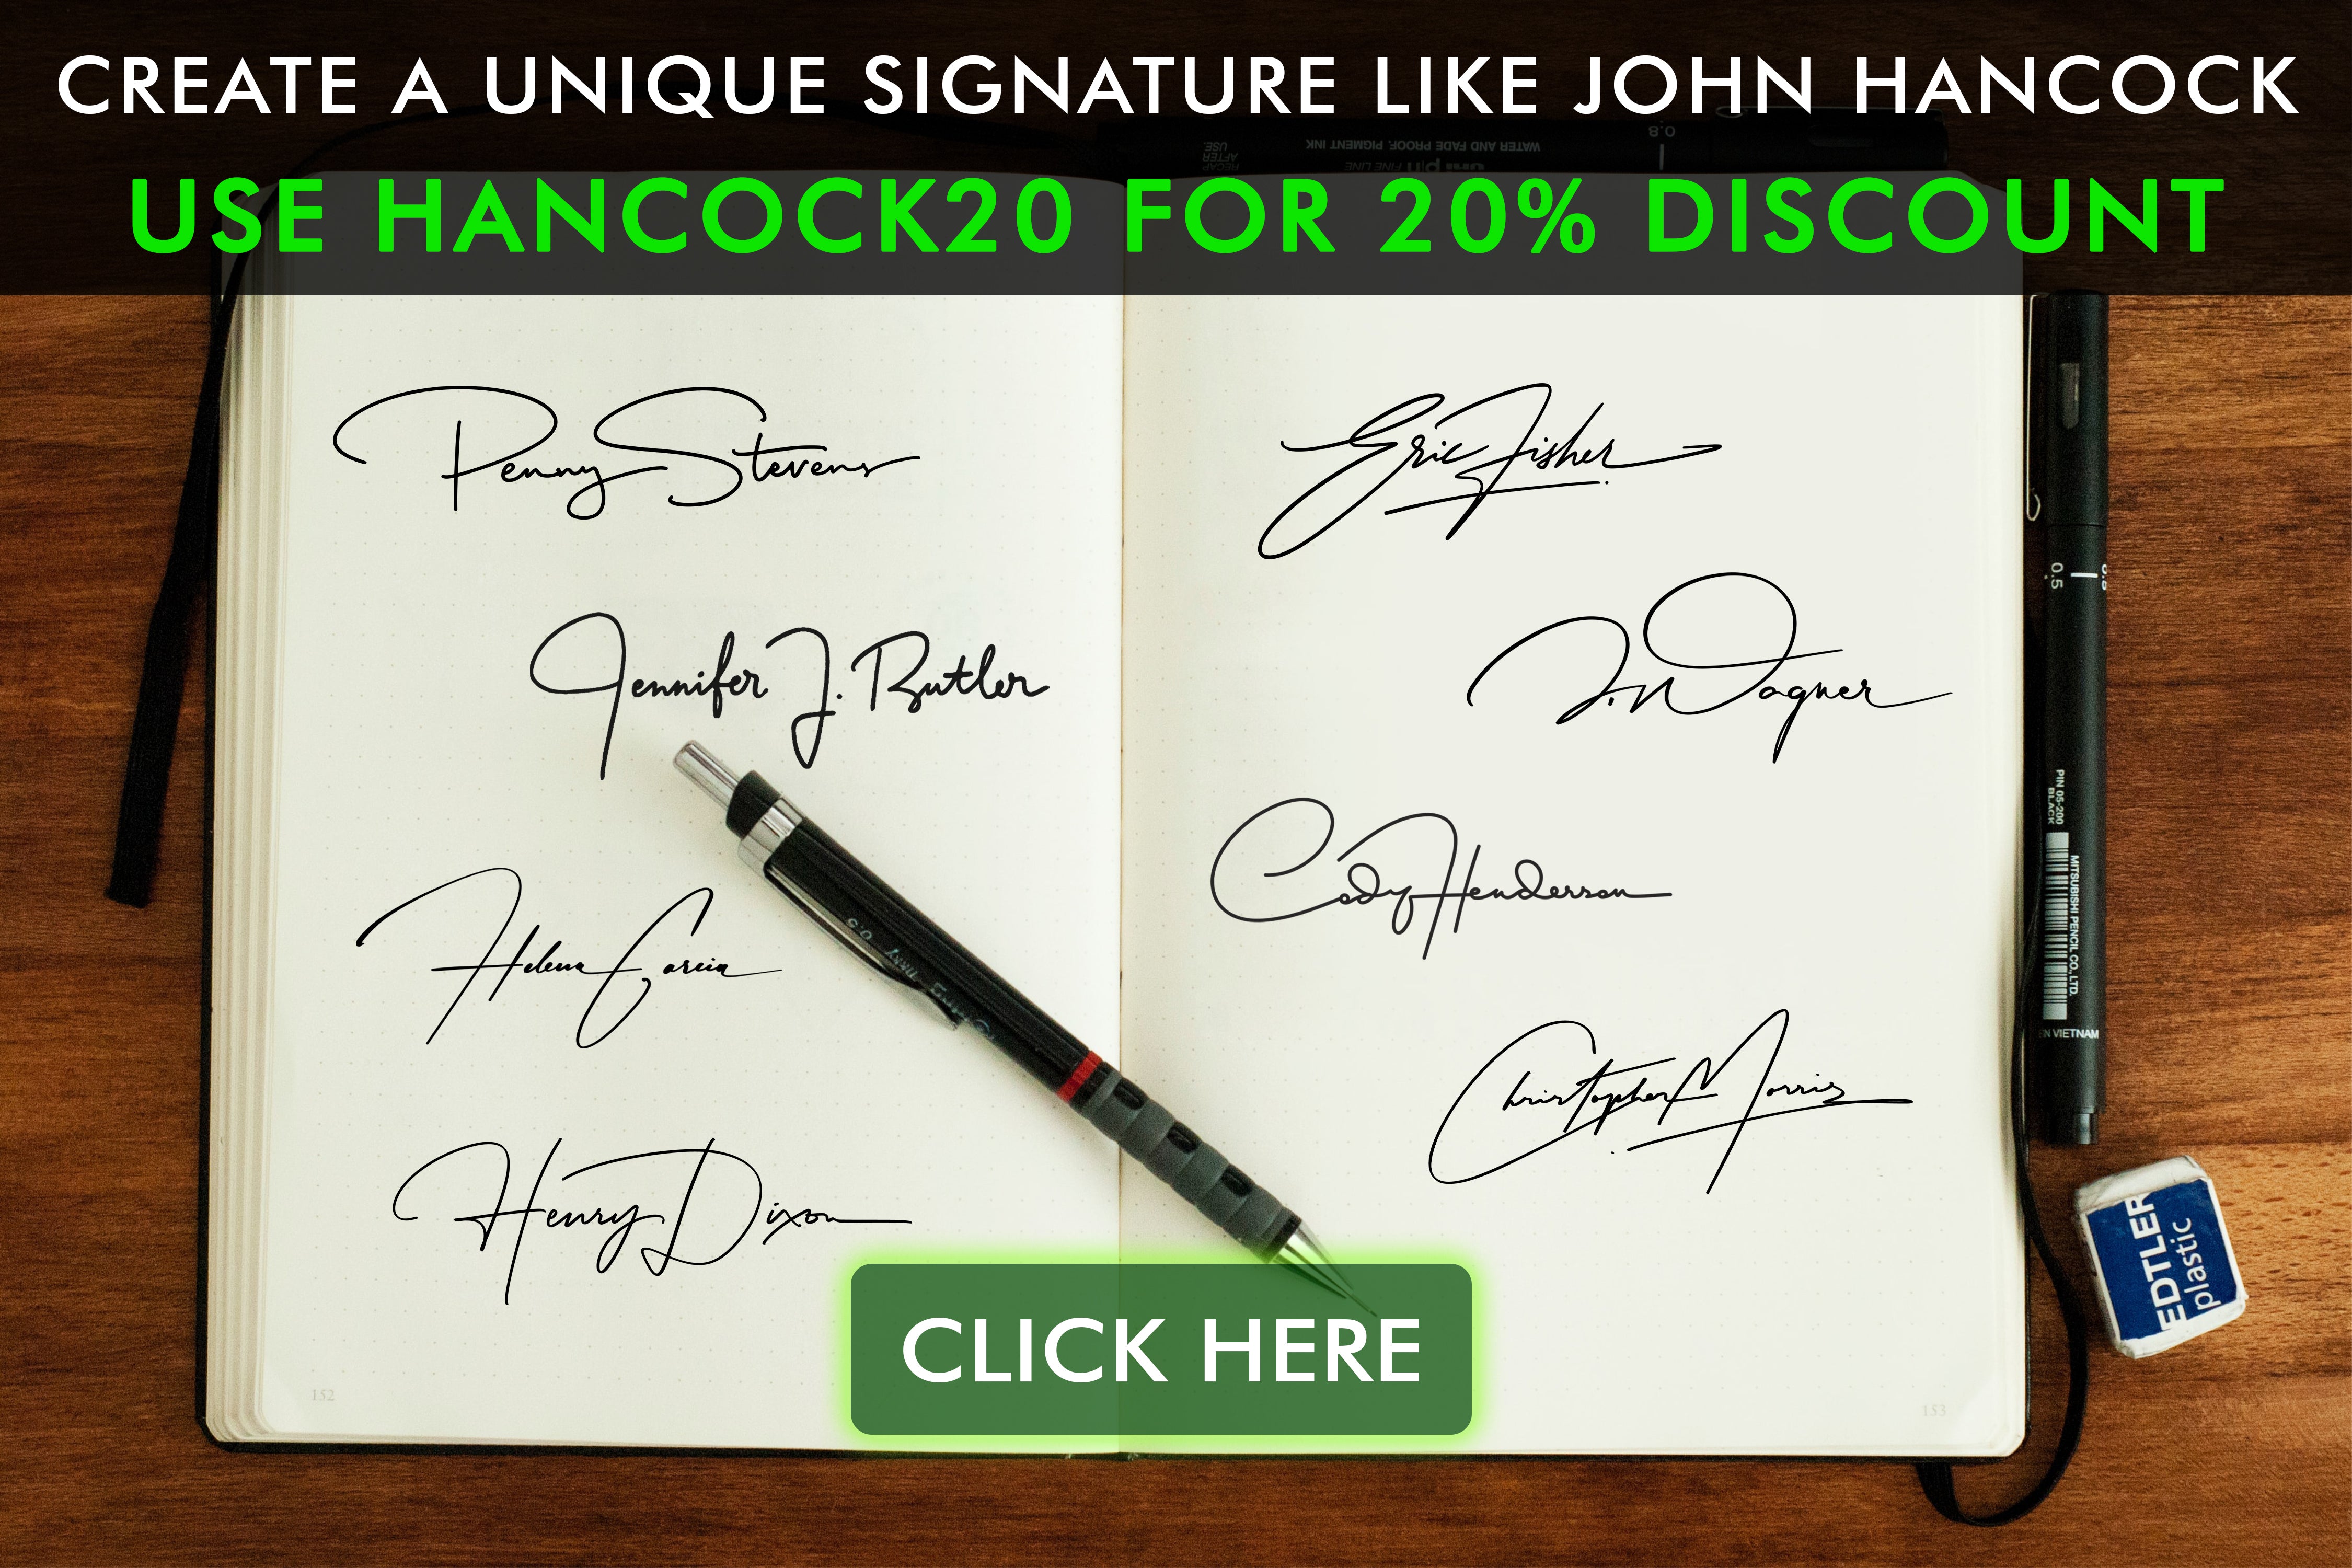 Find ud af historien om John Hancocks signatur og dens indflydelse på historien. Læs vores blog, og se vores kollektion inspireret af denne ikoniske signatur.